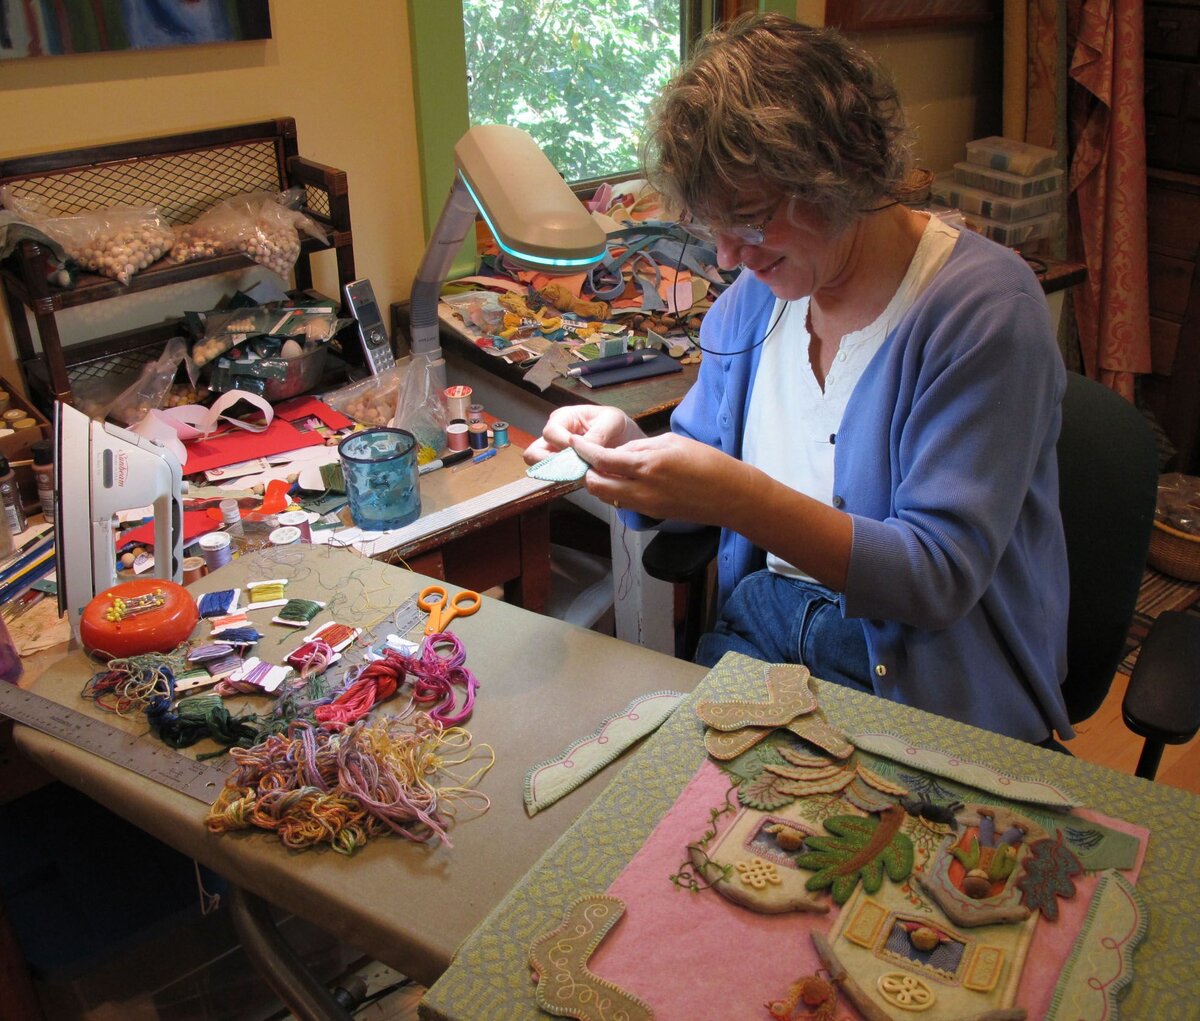 Селли Мейвор творит уже более 20 лет! А все началось с простого увлечения шитьем и создания детских игрушек и картинок. Продолжилось школой дизайнерского искусства Род Айленда....-1-3